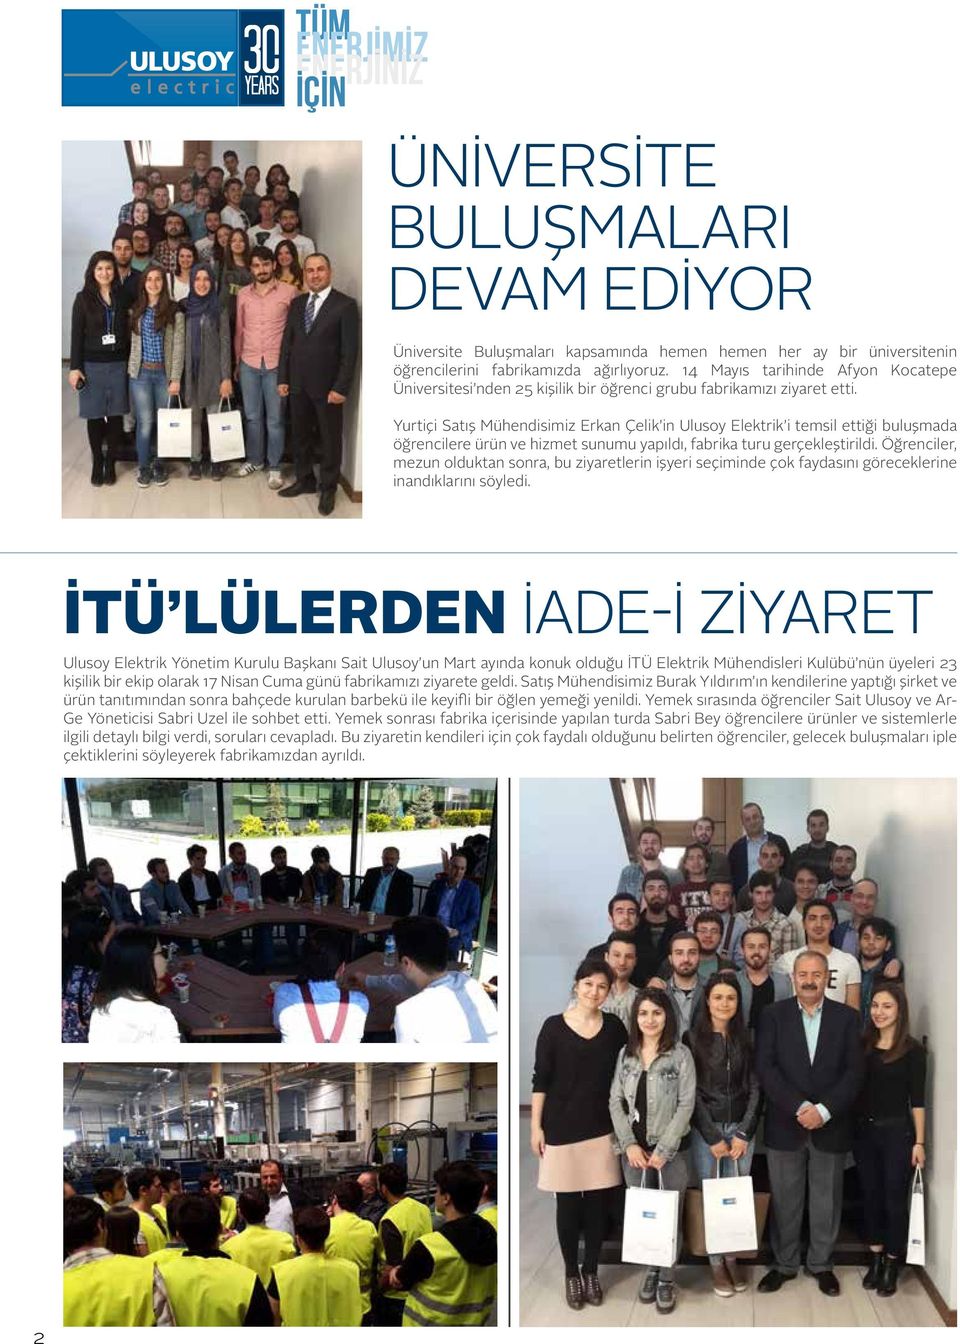 Yurtiçi Satış Mühendisimiz Erkan Çelik in Ulusoy Elektrik i temsil ettiği buluşmada öğrencilere ürün ve hizmet sunumu yapıldı, fabrika turu gerçekleştirildi.